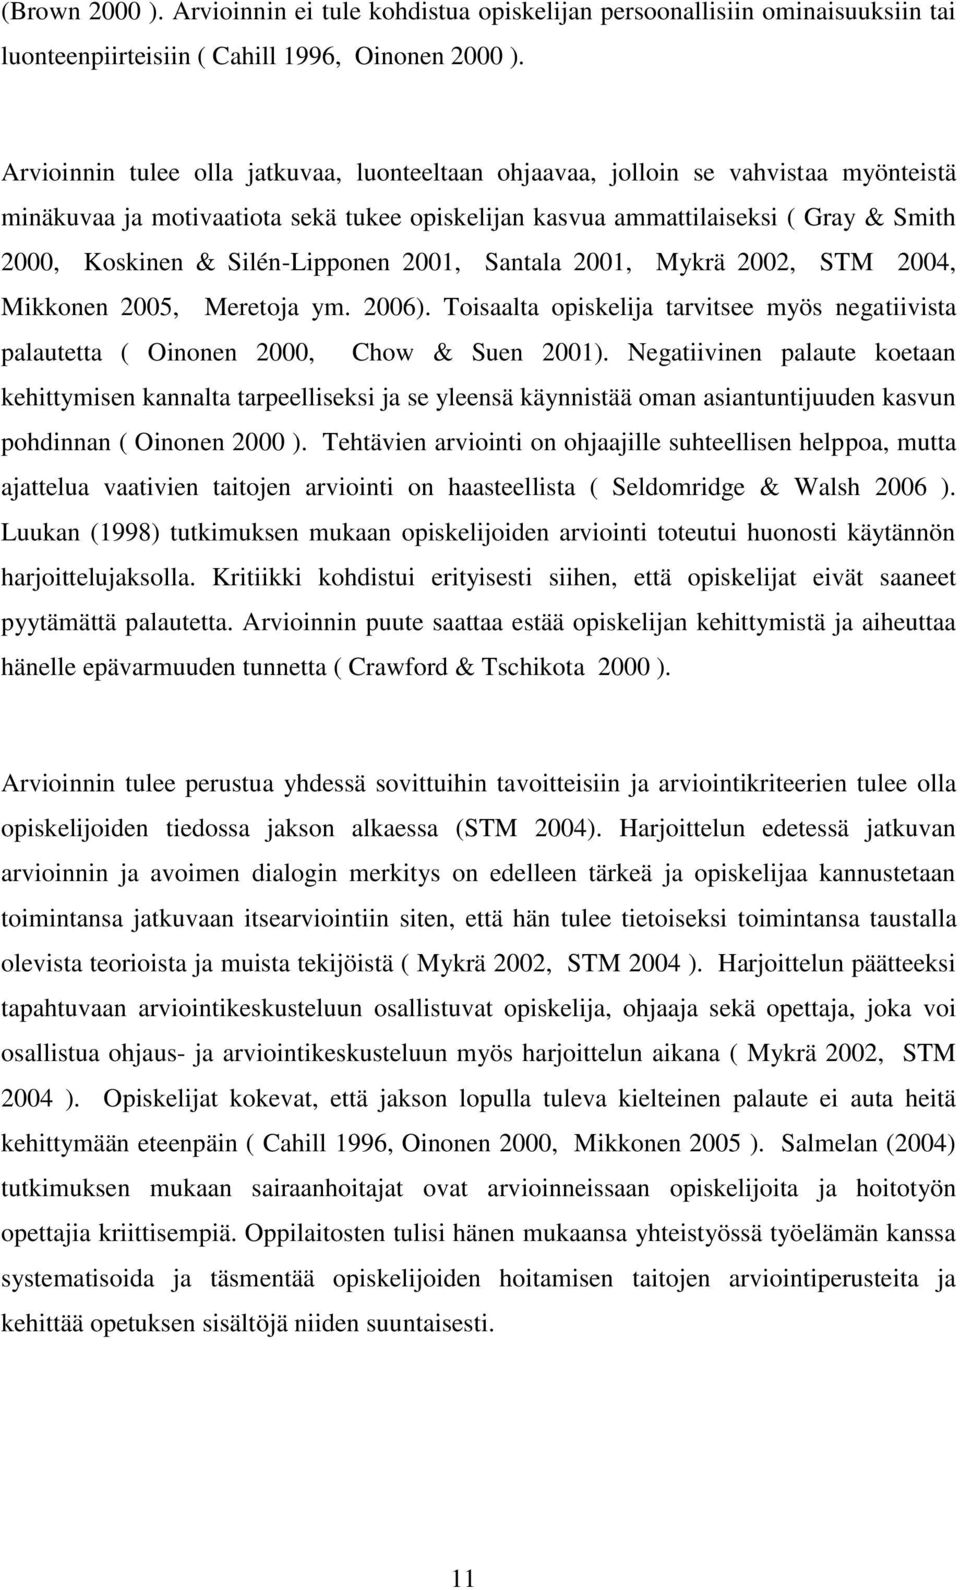 Silén-Lipponen 2001, Santala 2001, Mykrä 2002, STM 2004, Mikkonen 2005, Meretoja ym. 2006). Toisaalta opiskelija tarvitsee myös negatiivista palautetta ( Oinonen 2000, Chow & Suen 2001).